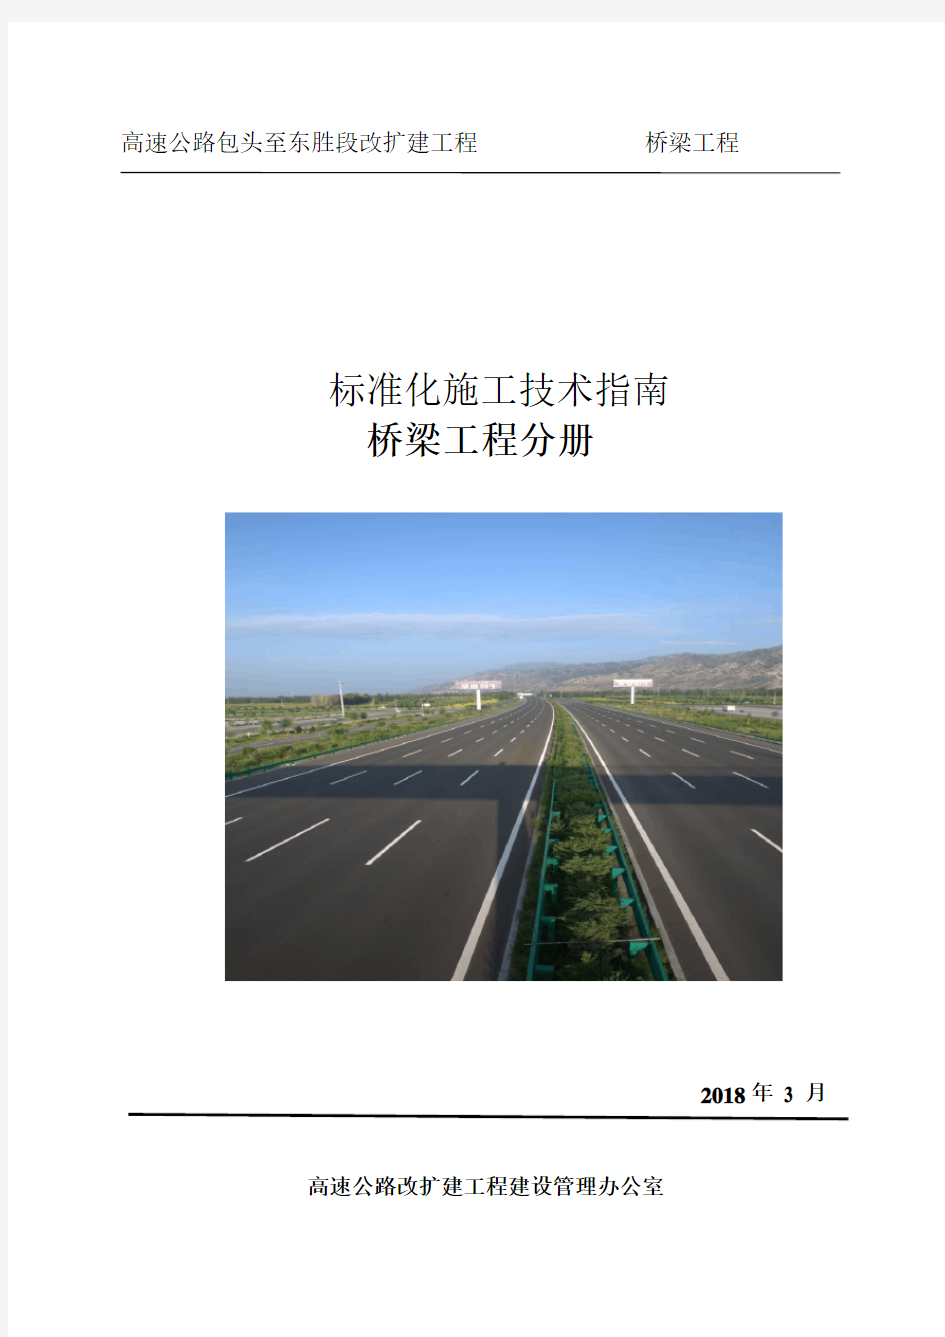 高速公路改扩建工程标准化施工技术指南(DOC 165页)[优质实用版资料]